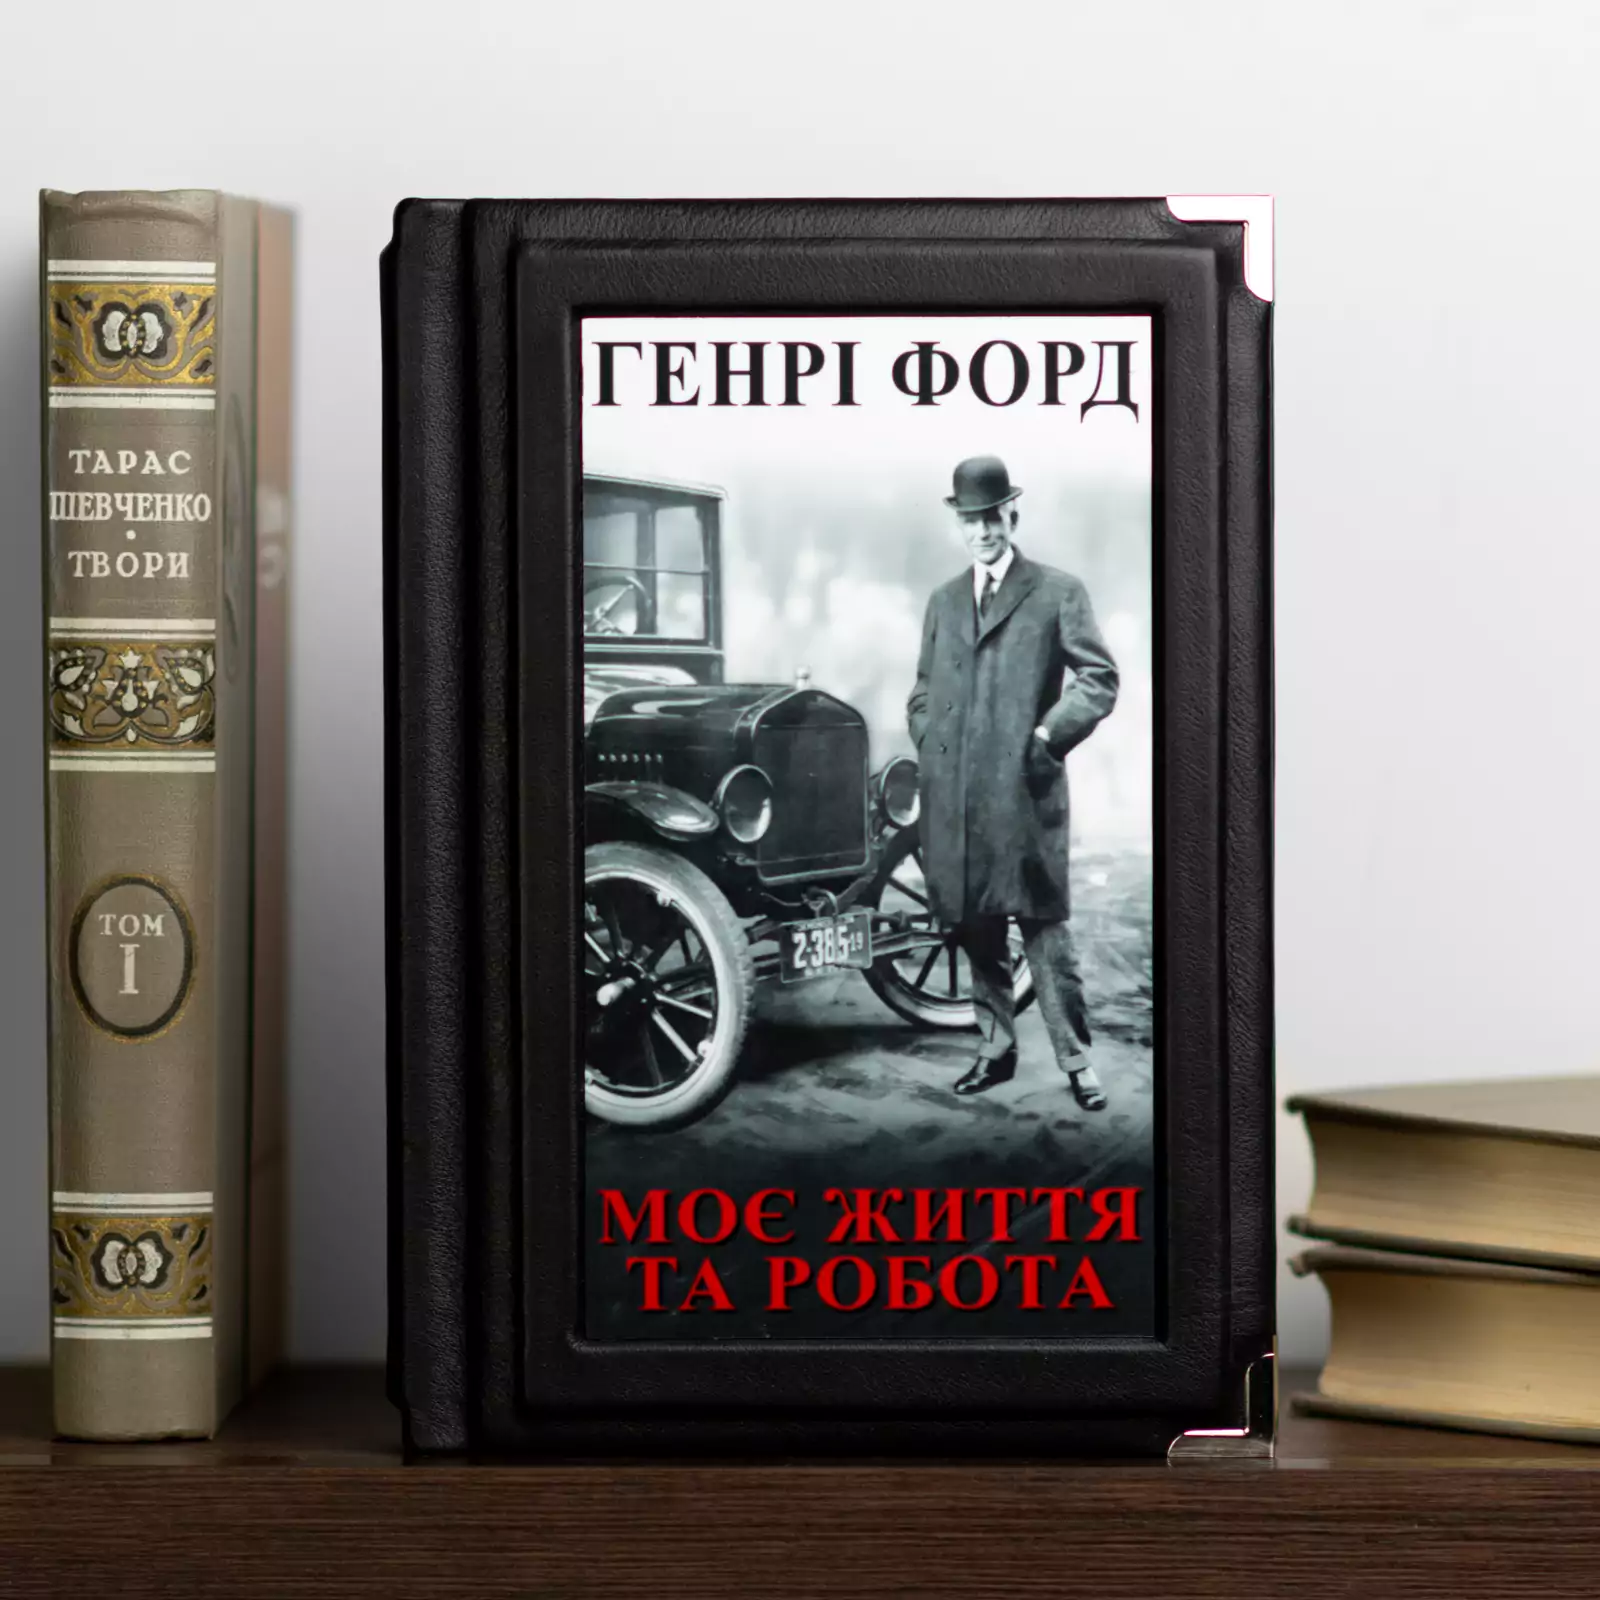 Книга Генрі Форда "Моє життя та робота", шкіряна обкладинка (українською мовою)